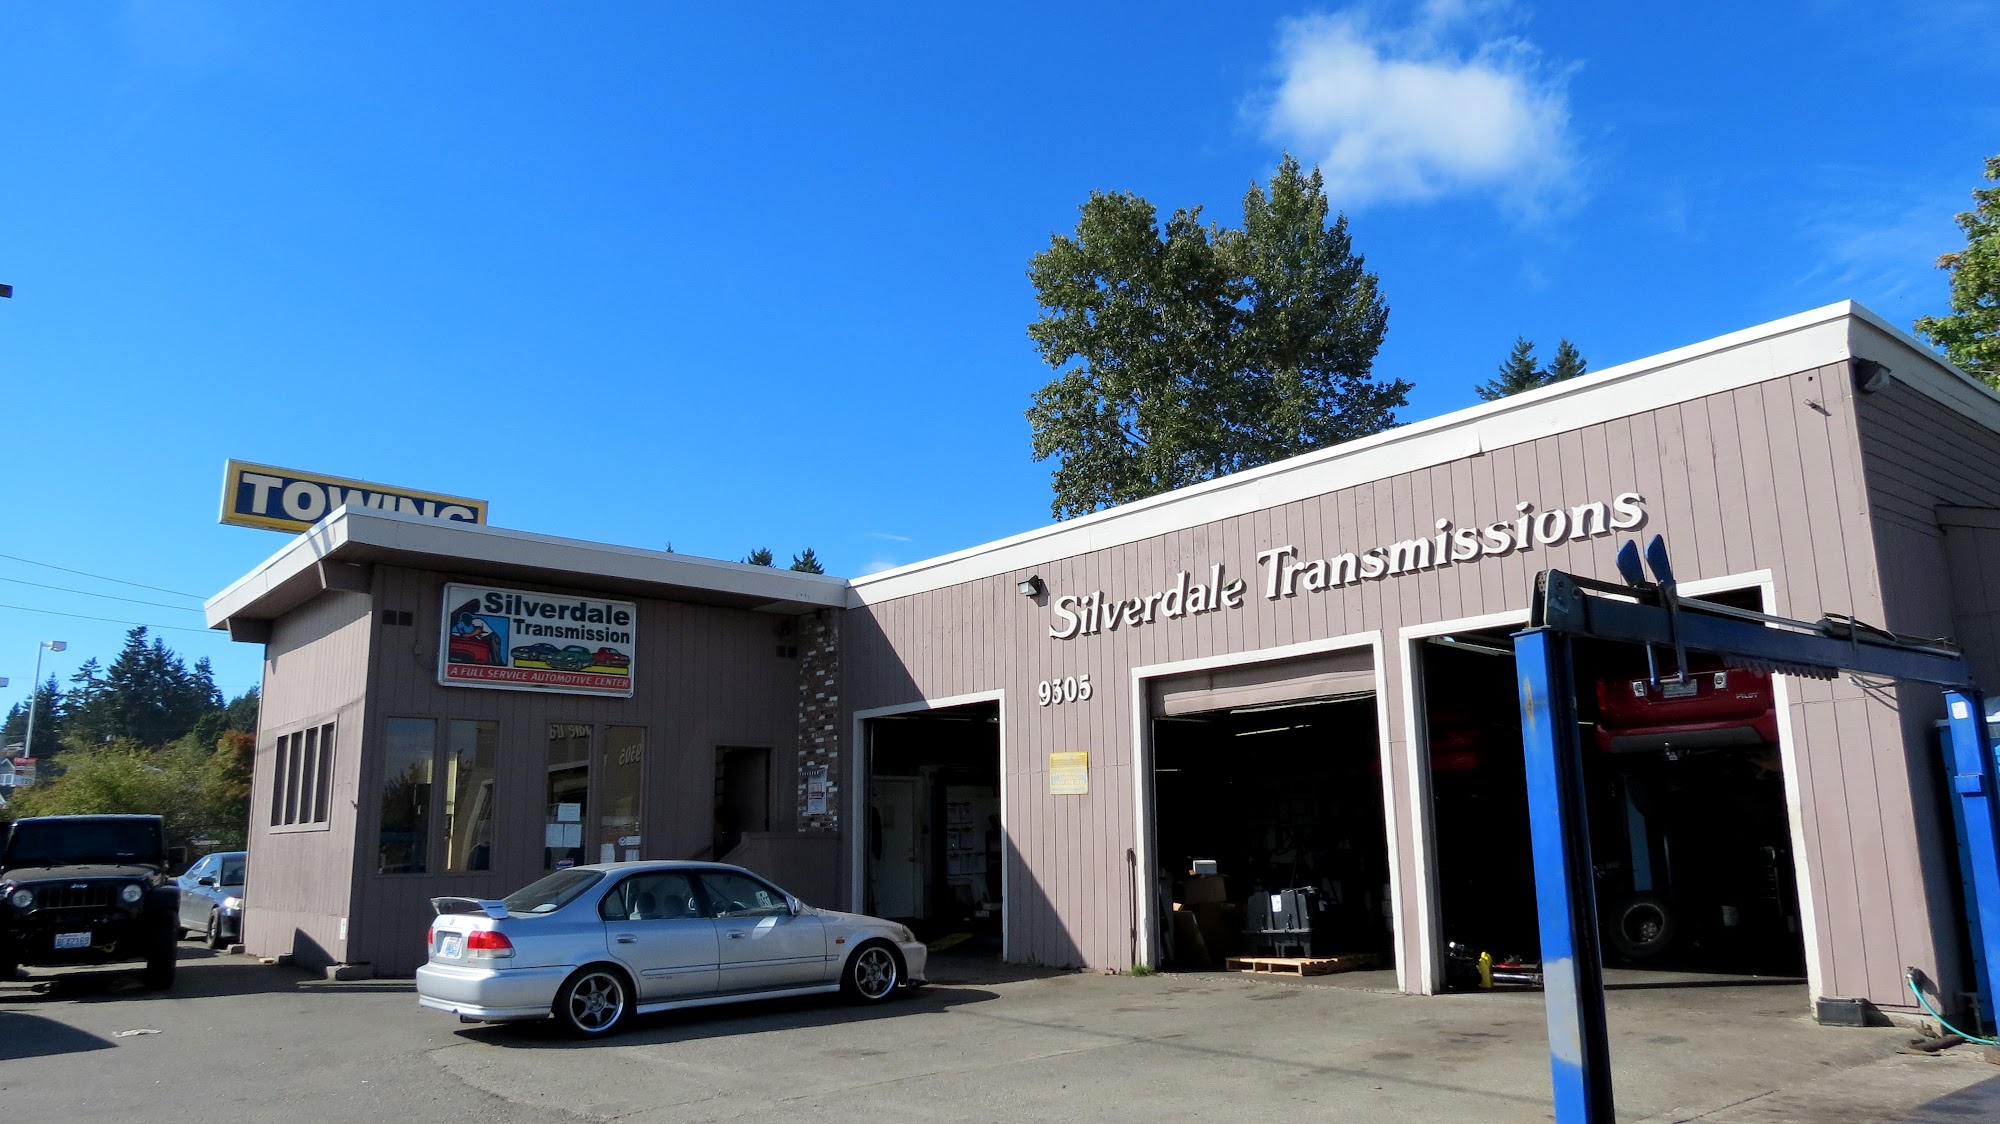 Silverdale Transmission & Automotive